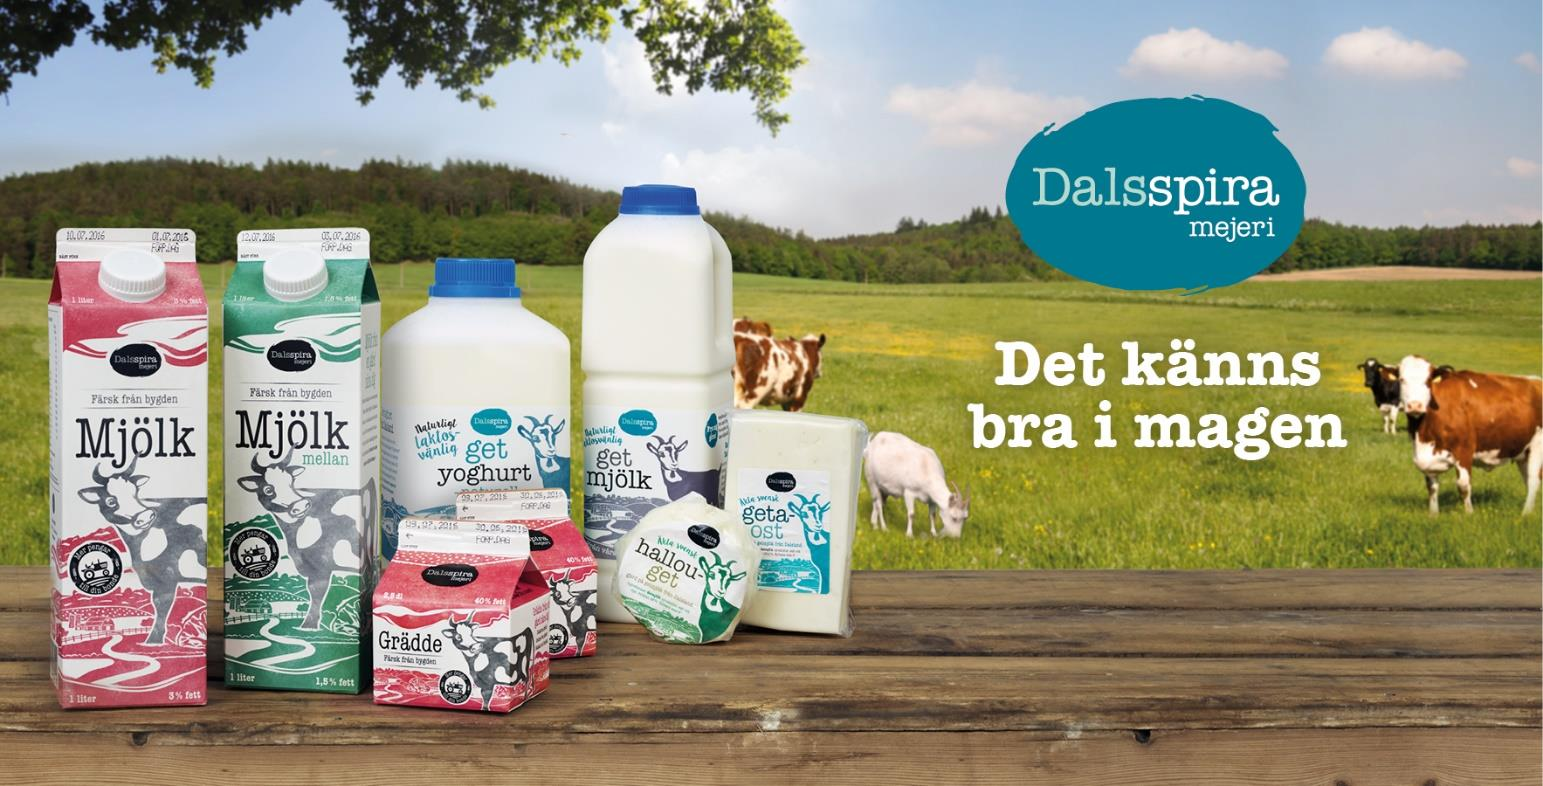 2016-11-18 Delårsrapport 4 Oktober 2015 - September 2016 Dalsspira mejeri erbjuder lokalproducerade get- och komjölksprodukter med god smak och unika egenskaper.